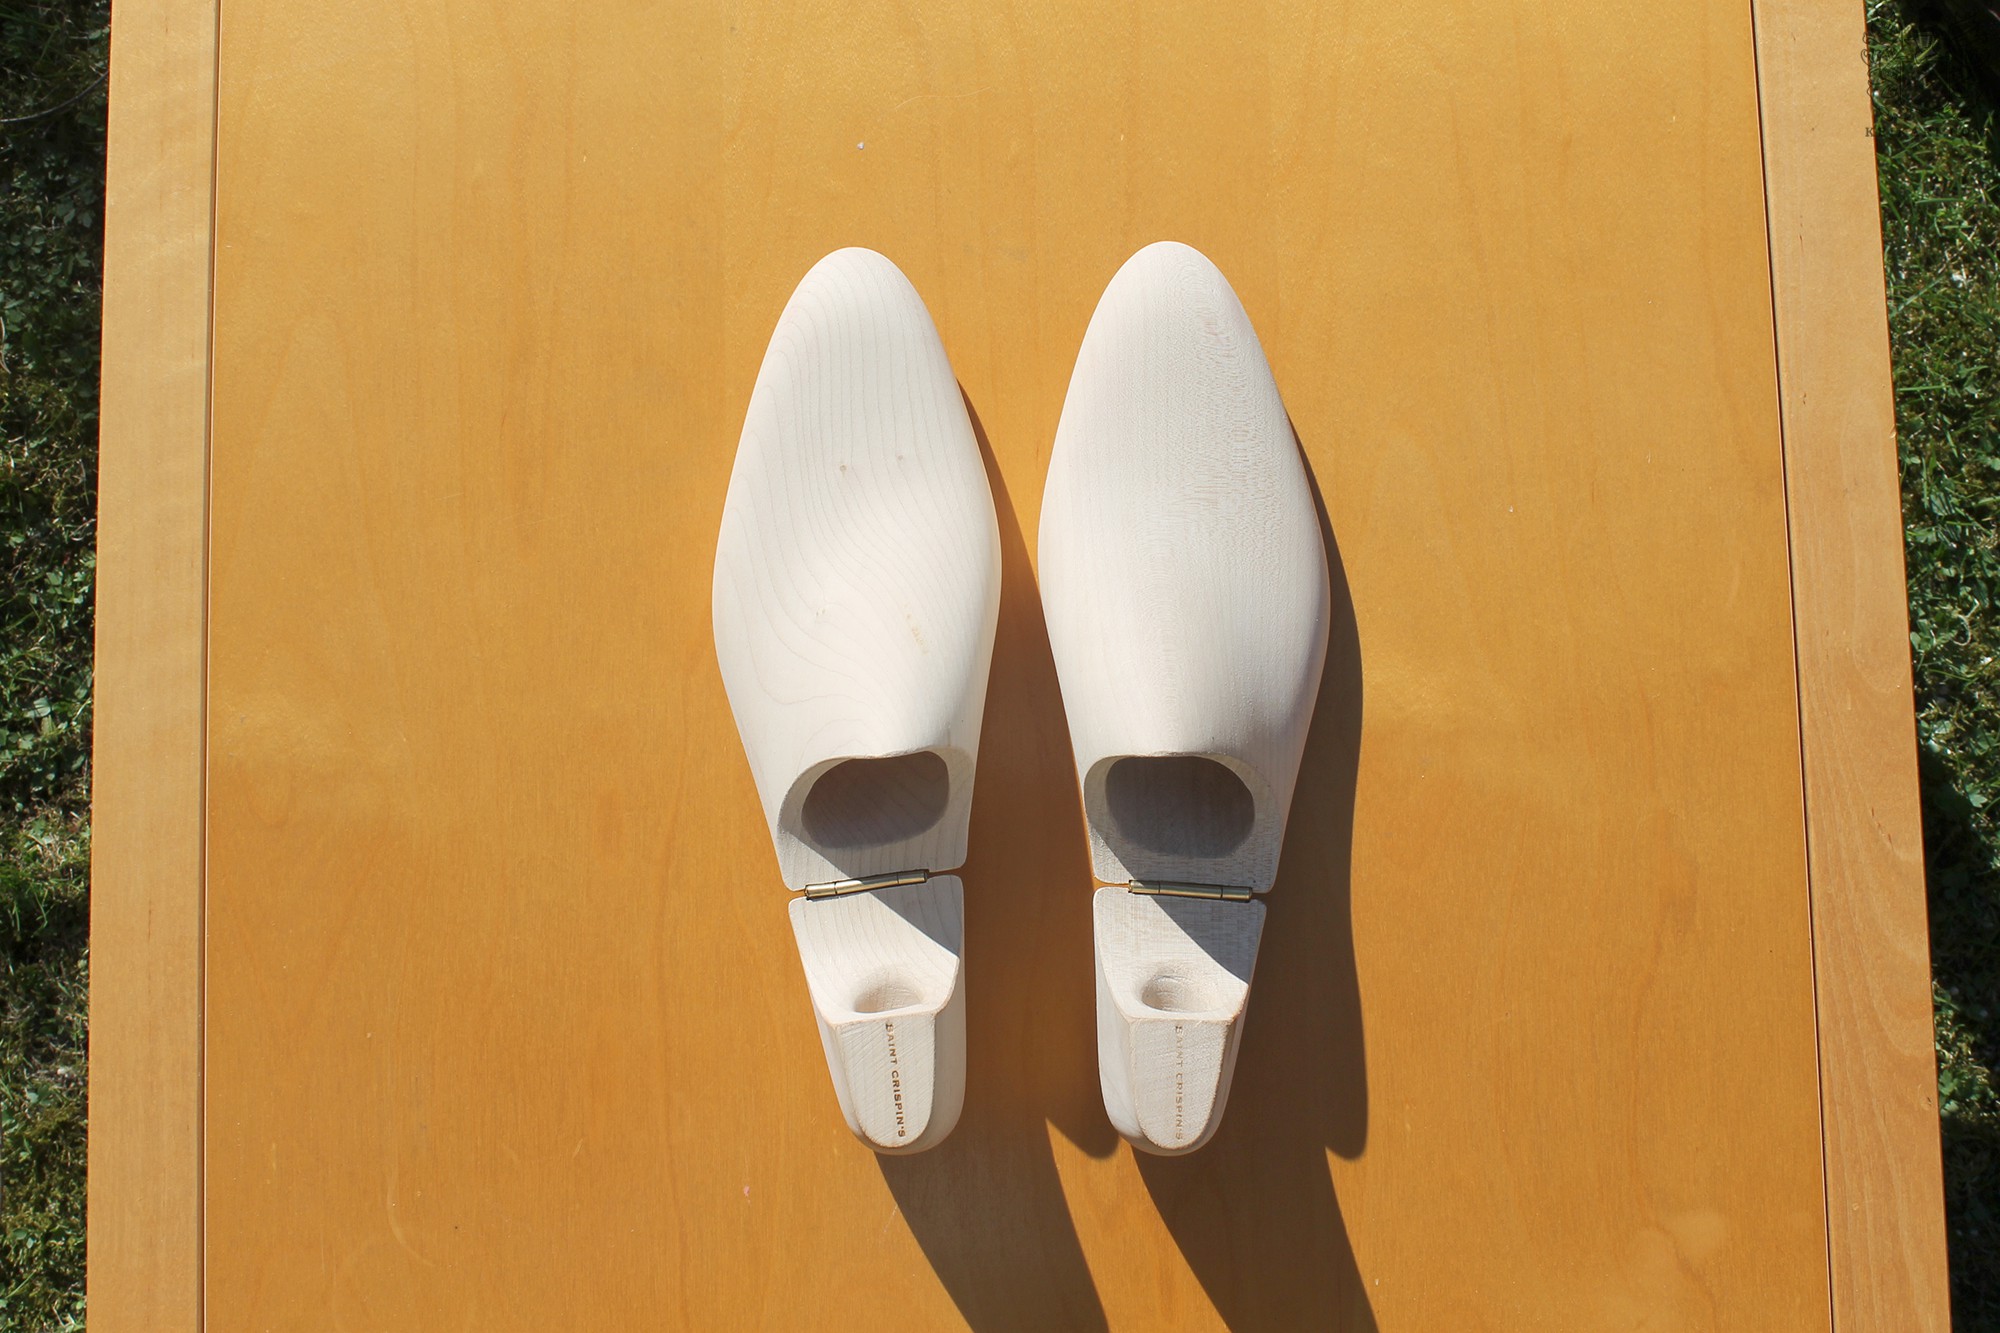 Anatomy_of_Saint_Crispin's_shoes_at_Keikari_dot_com17